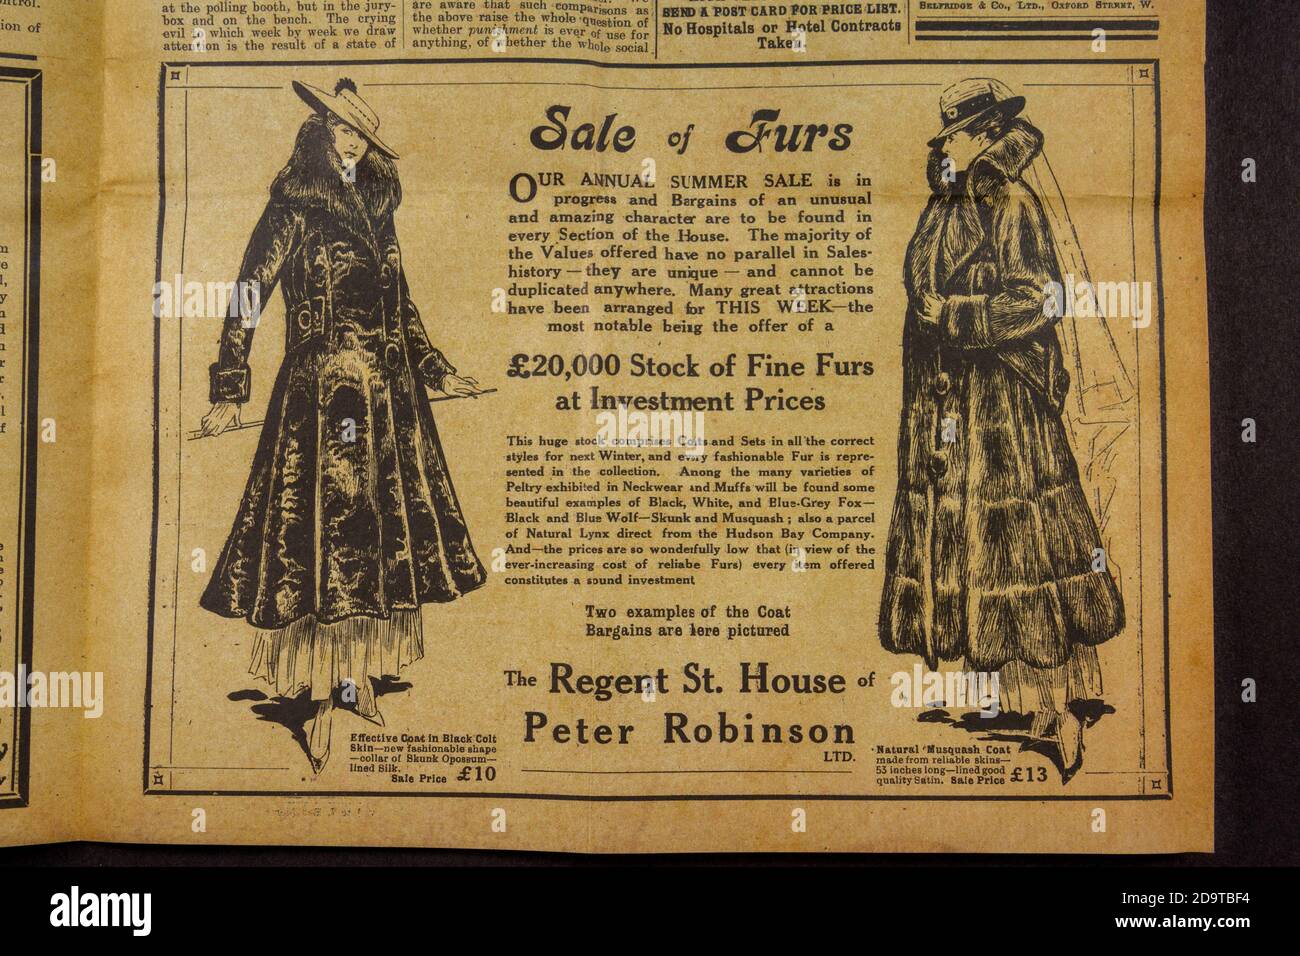 Werbung für Regent St. House of Peter Robinson, 'Votes for Women' Magazin, 16. Juli 1915: Replik-Erinnerungsstücke der Suffragettes-Bewegung, Großbritannien. Stockfoto